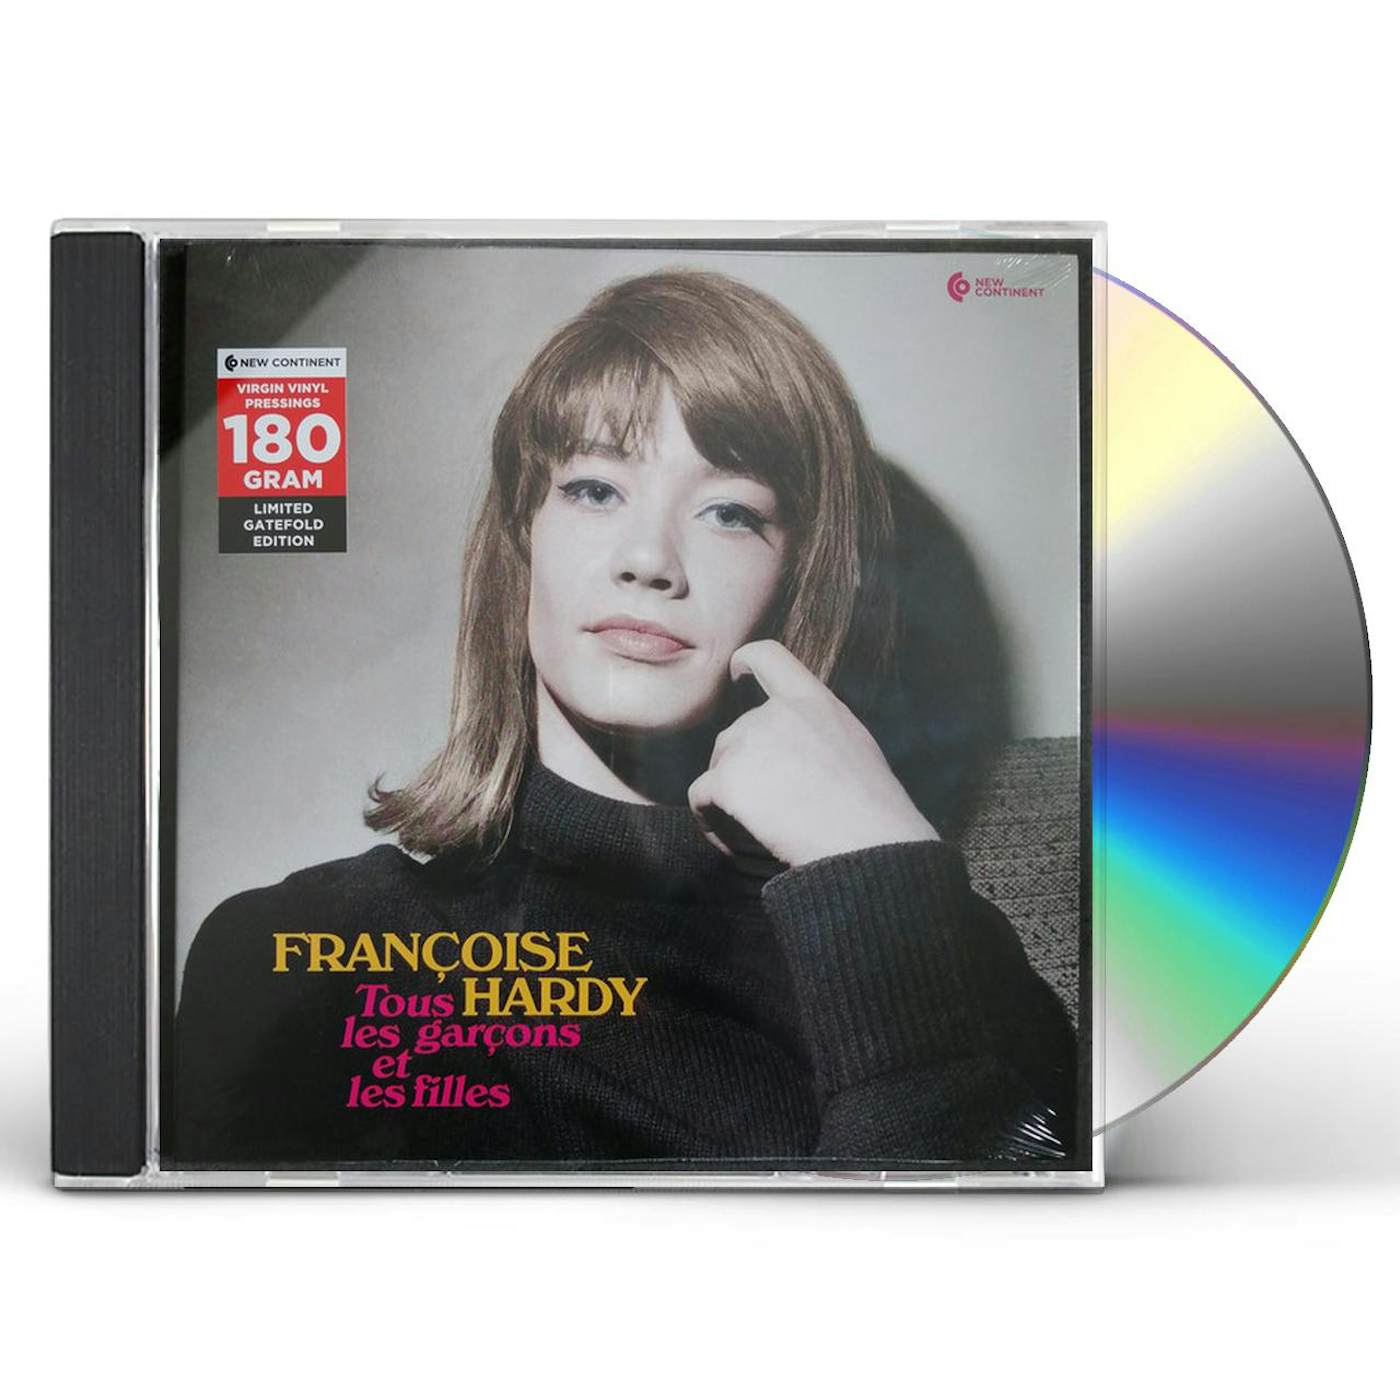 Françoise Hardy TOUS LES GARCONS ET LES FILLES Vinyl Record